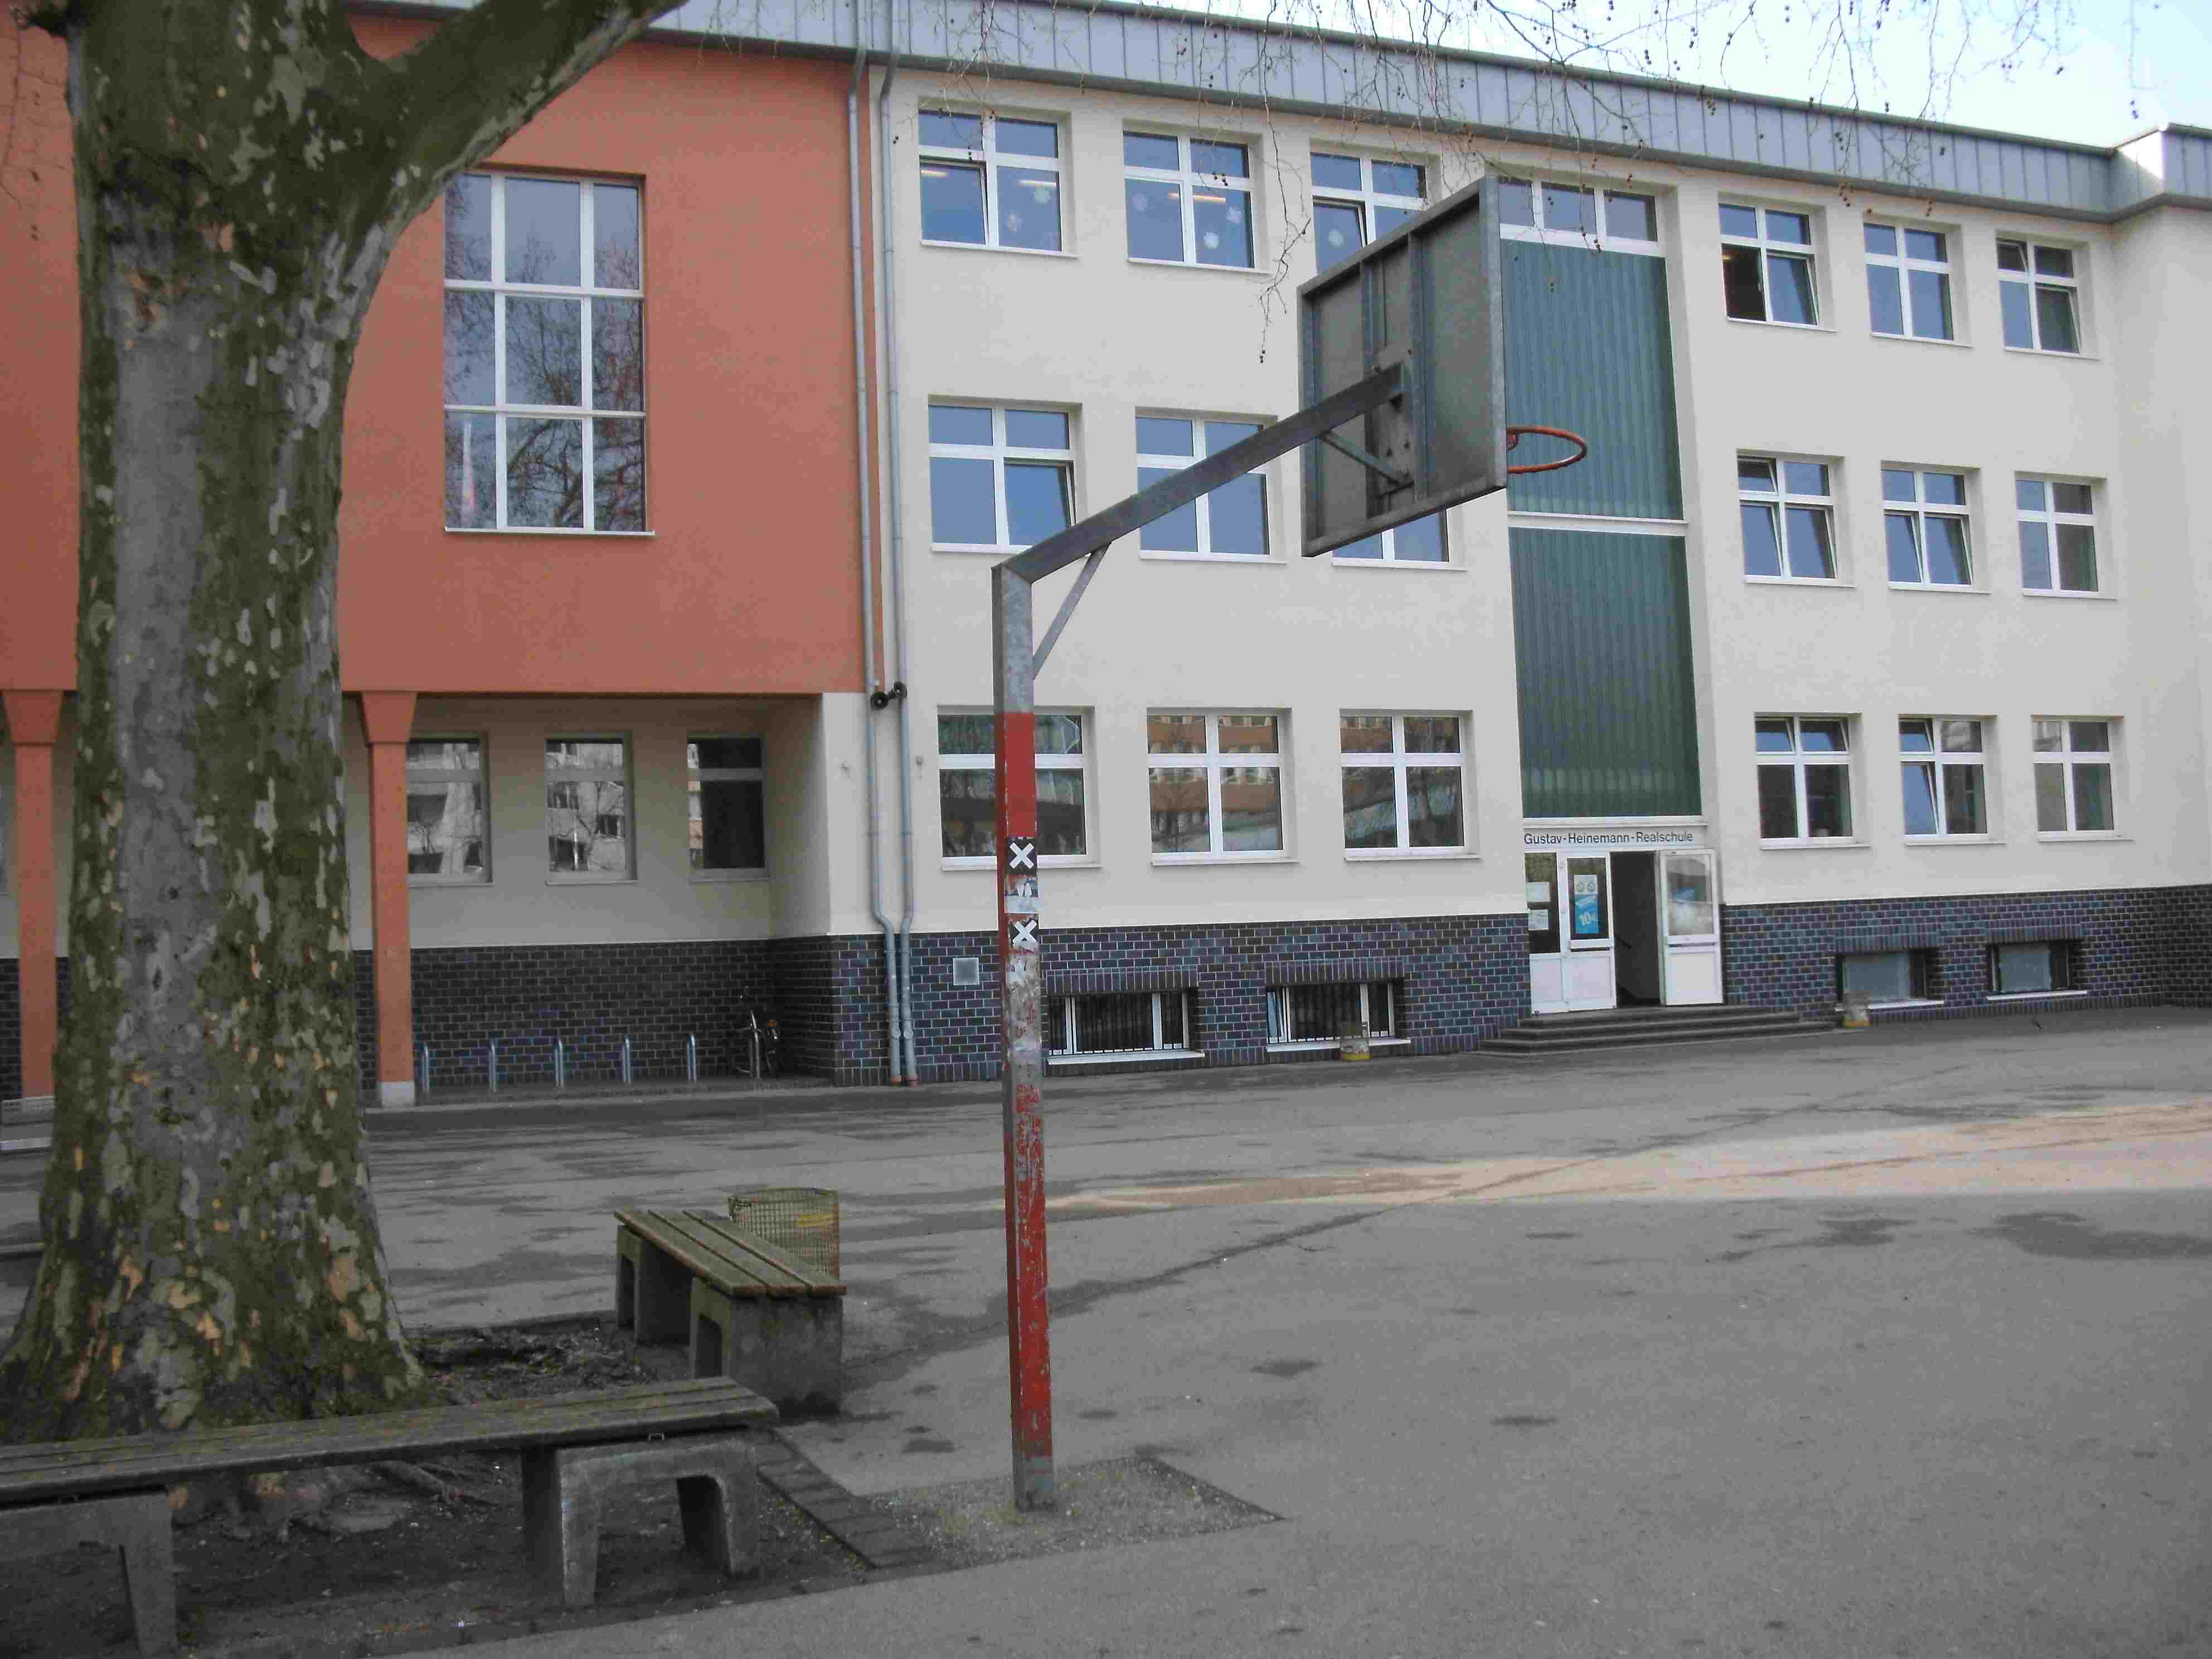 Gustav-Heinemann-Realschule